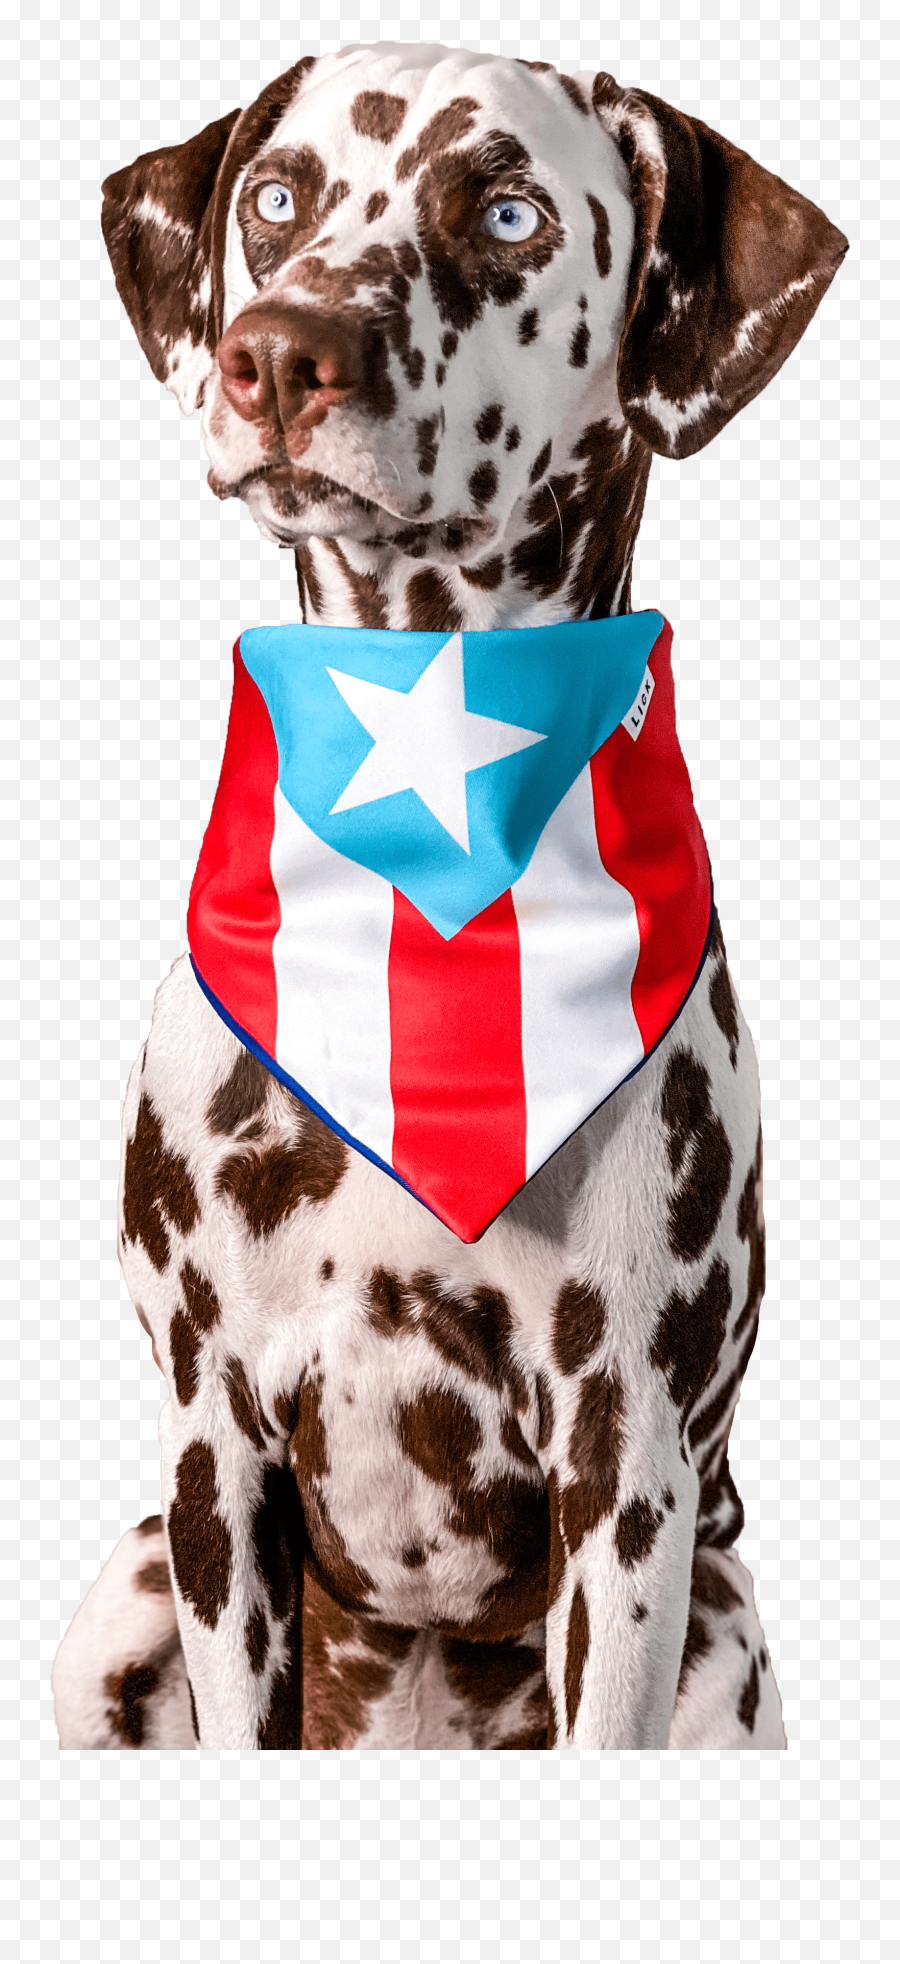 Lick - Dog Puerto Rican Clothes Emoji,Puerto Rican Flag Png